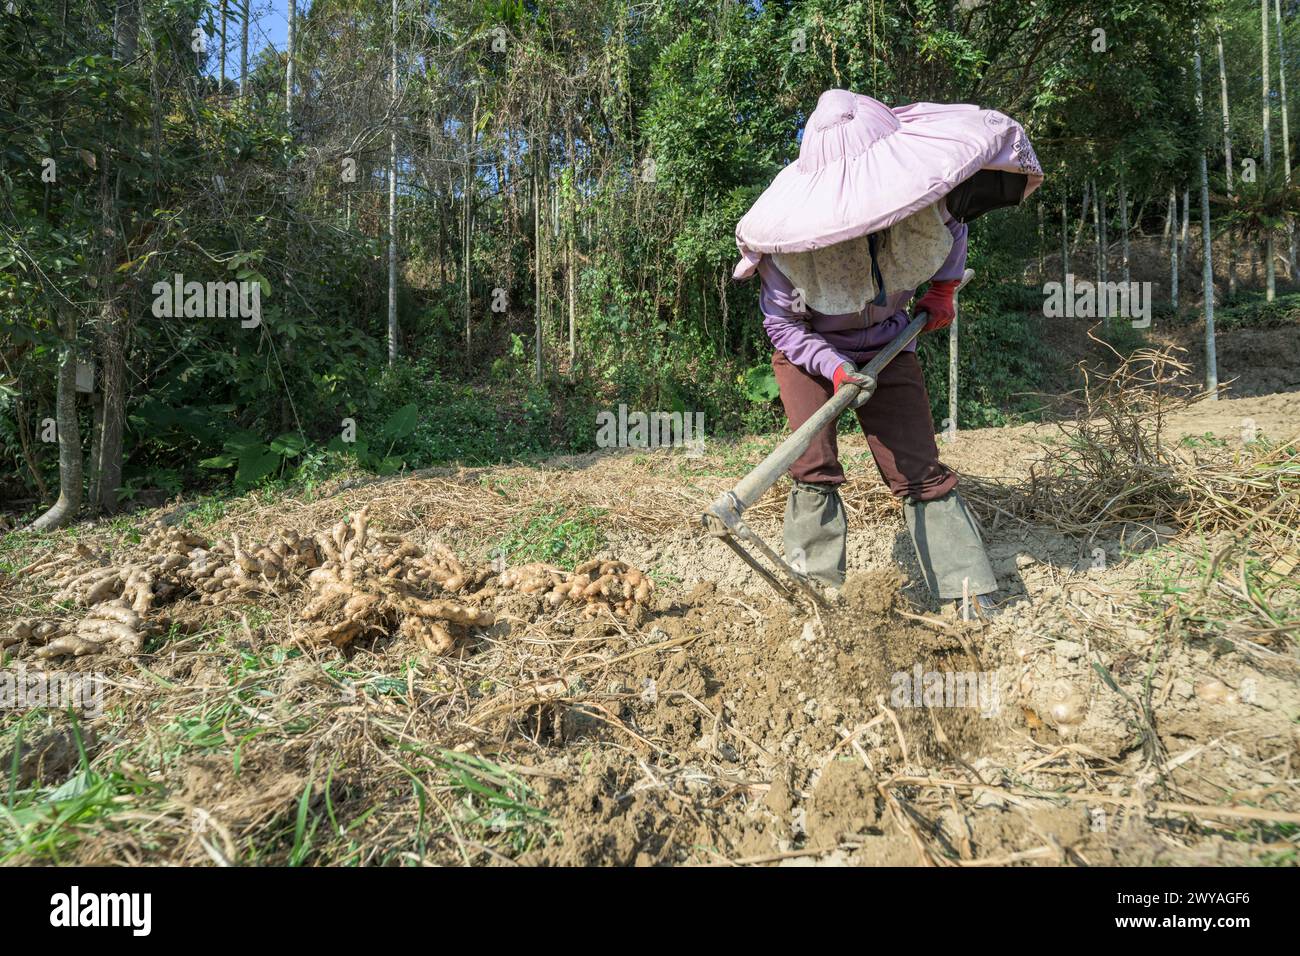 Ein Bauer mit Hut gräbt Erde mit einer Hacke aus, um Ingwerwurzeln auf einem Feld zu ernten Stockfoto